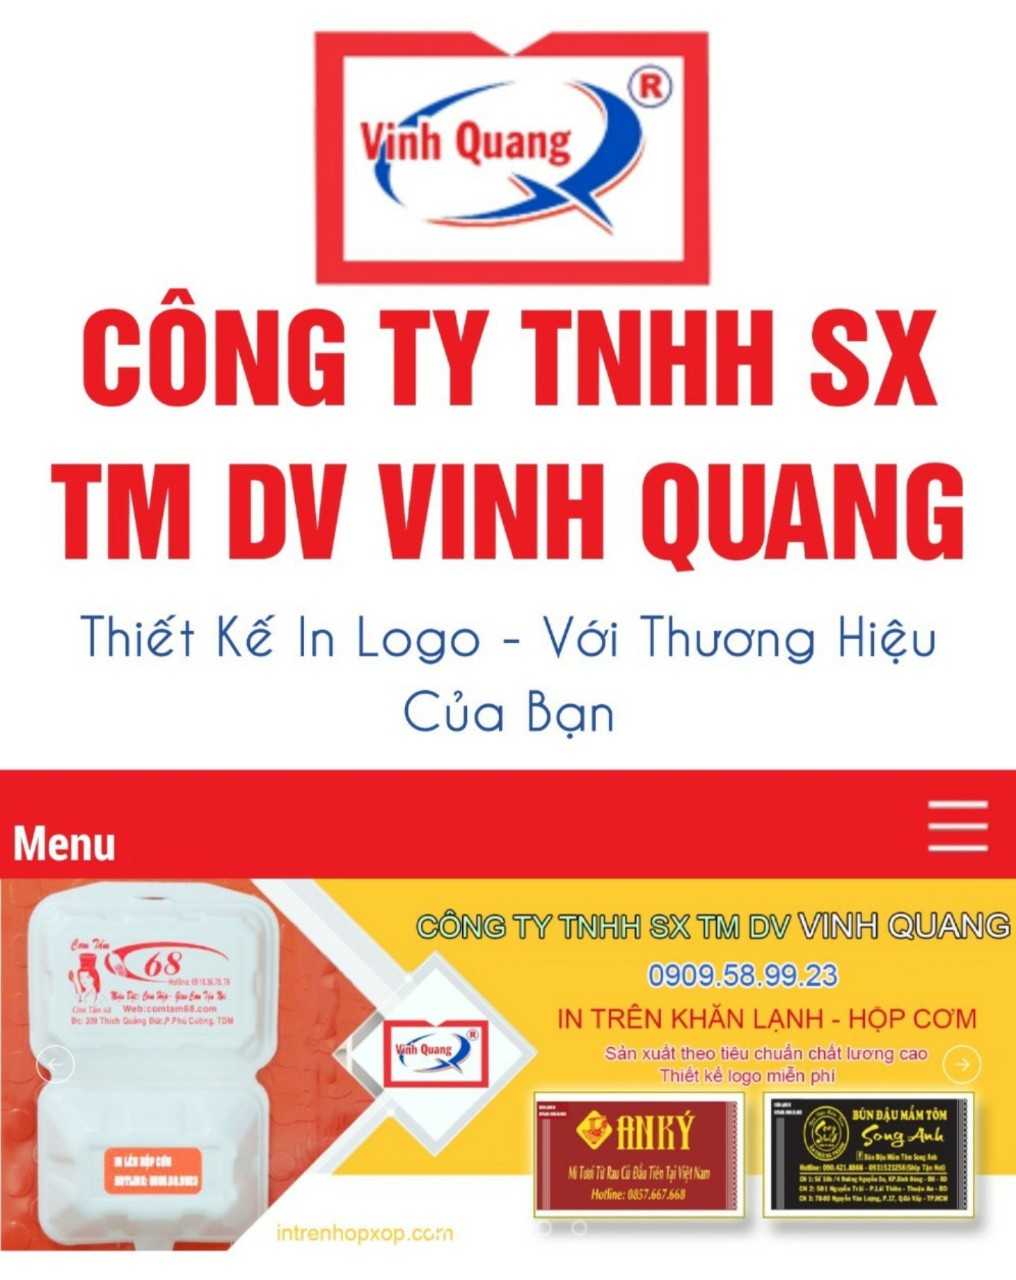 Sản phẩm - Công Ty TNHH SX TM DV Vinh Quang